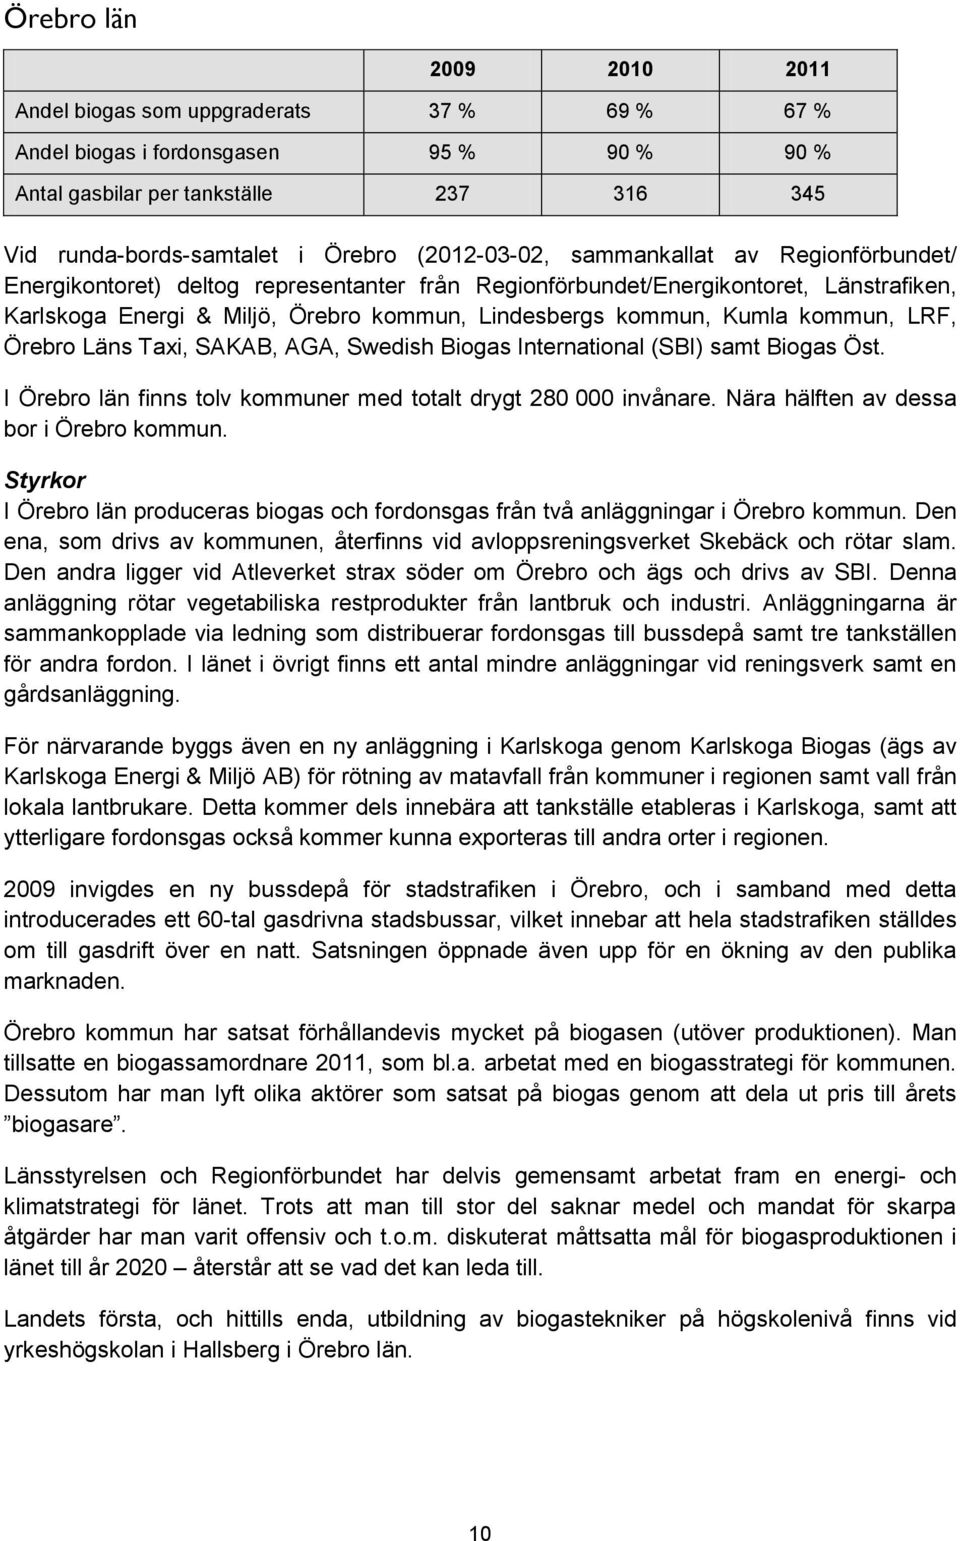 Kumla kommun, LRF, Örebro Läns Taxi, SAKAB, AGA, Swedish Biogas International (SBI) samt Biogas Öst. I Örebro län finns tolv kommuner med totalt drygt 280 000 invånare.